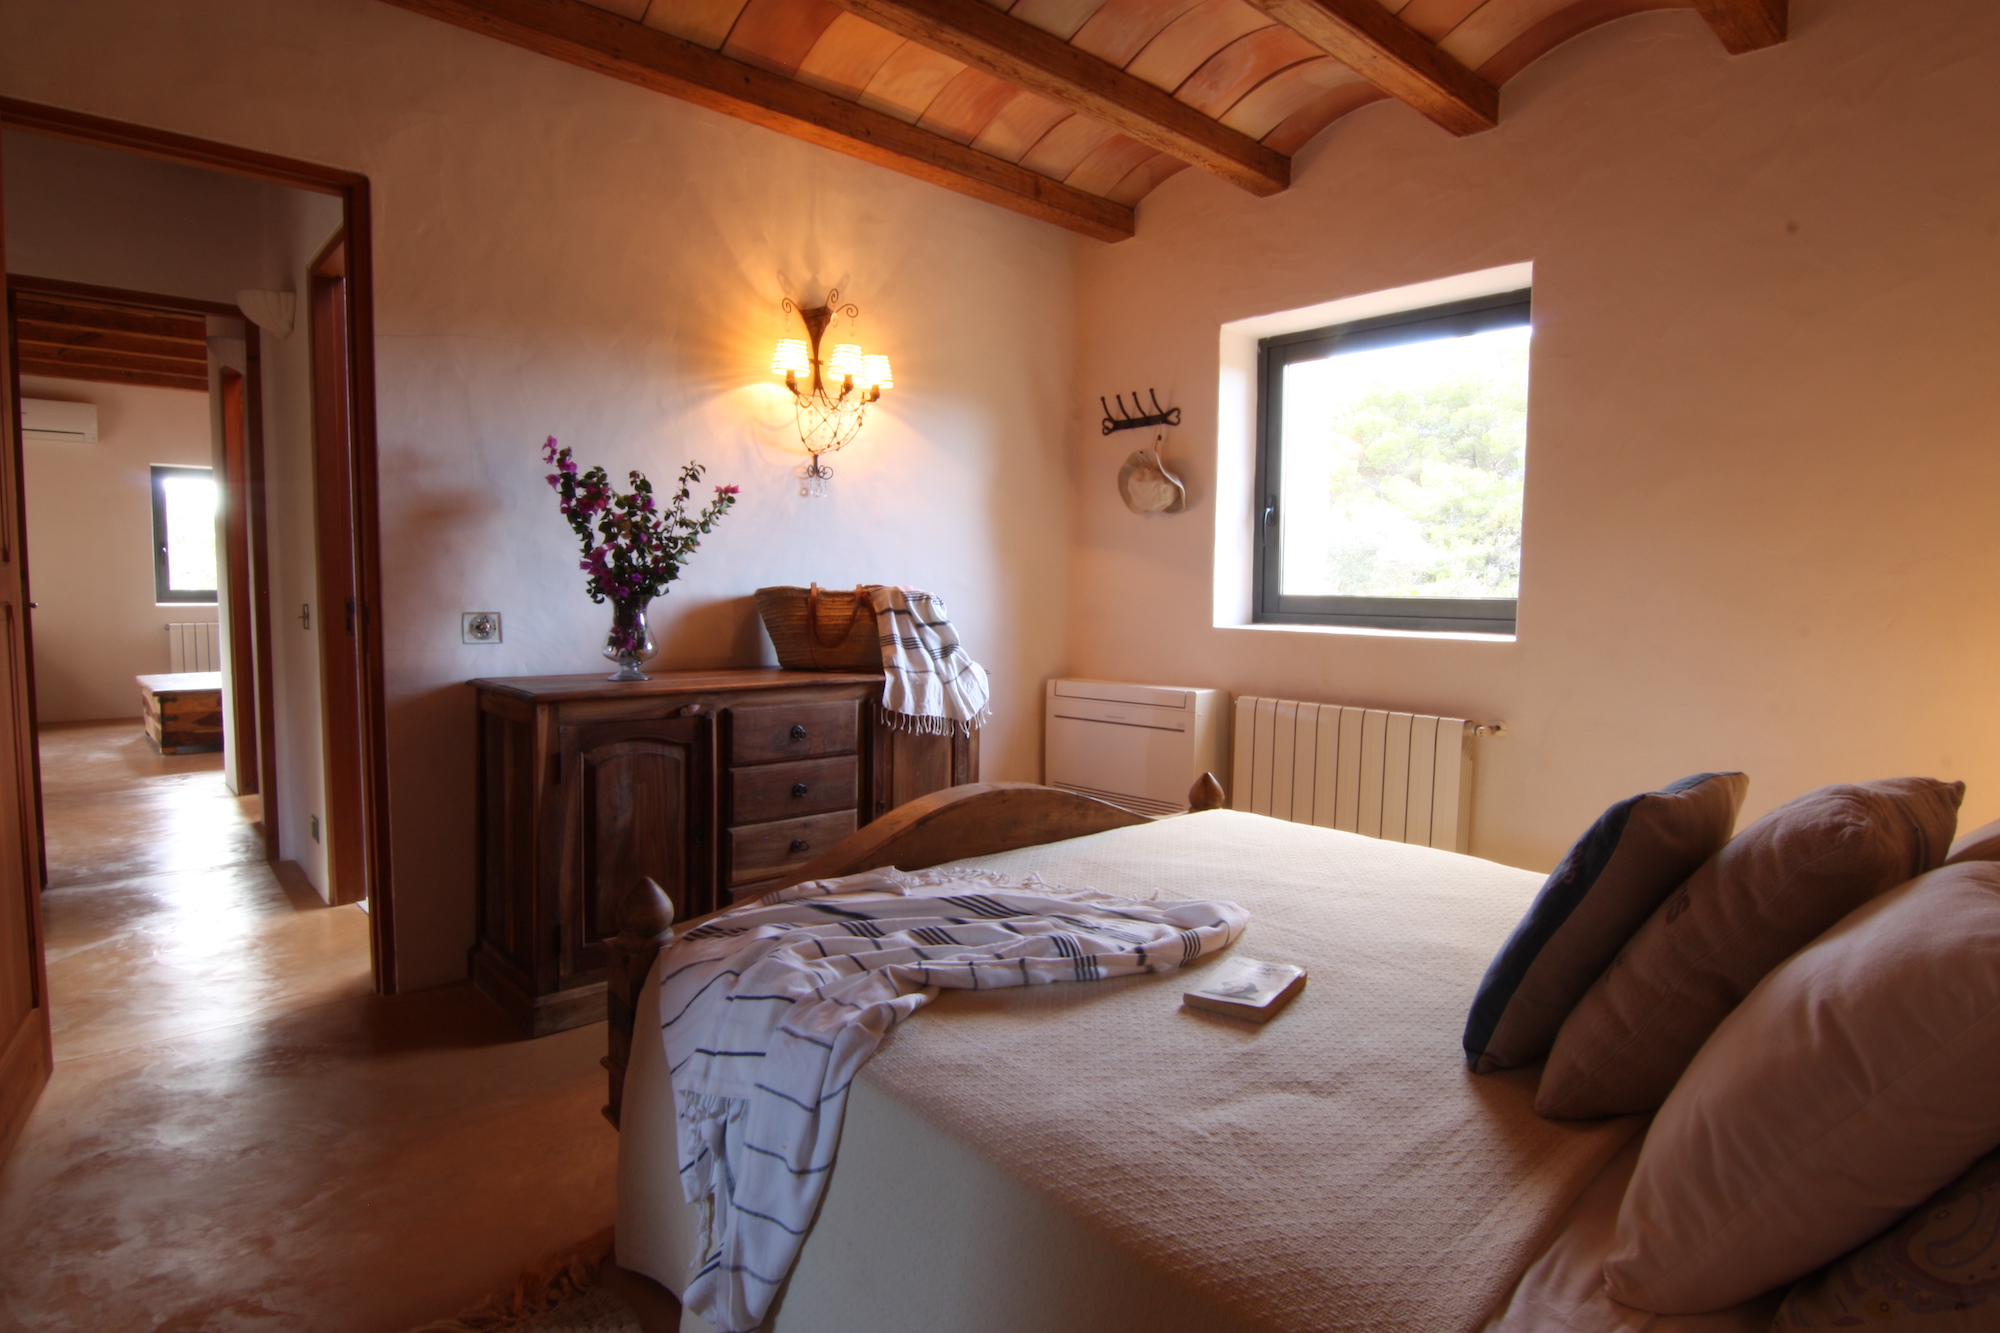 4 bedroom rental villa, Formentera